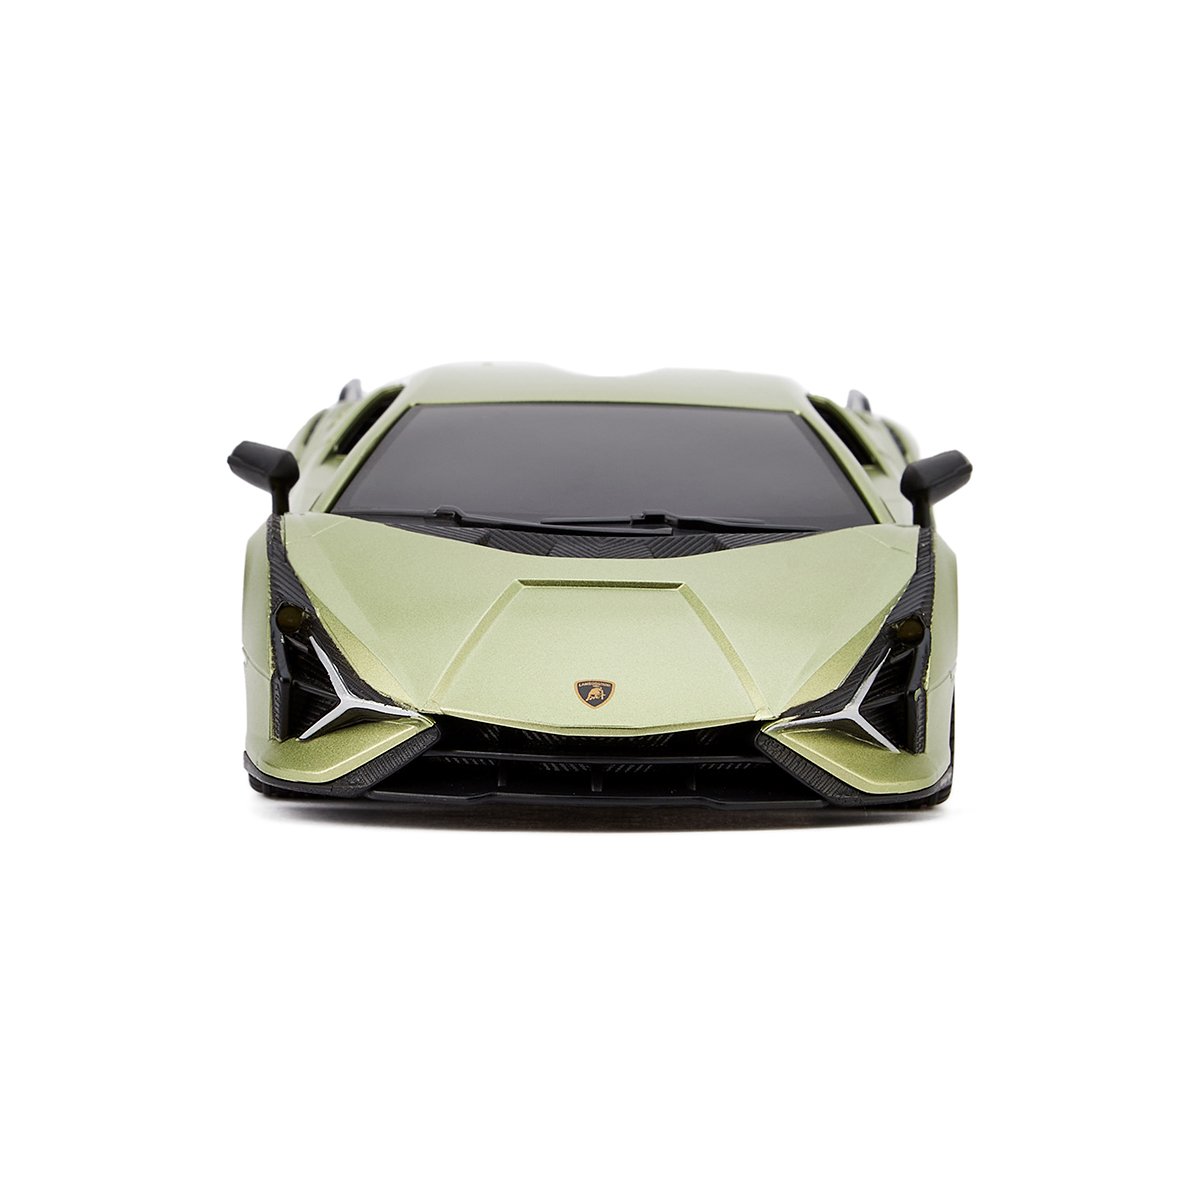 Автомобиль KS Drive на р/у Lamborghini Sian 1:24, 2.4Ghz зеленый (124GLSG) - фото 2